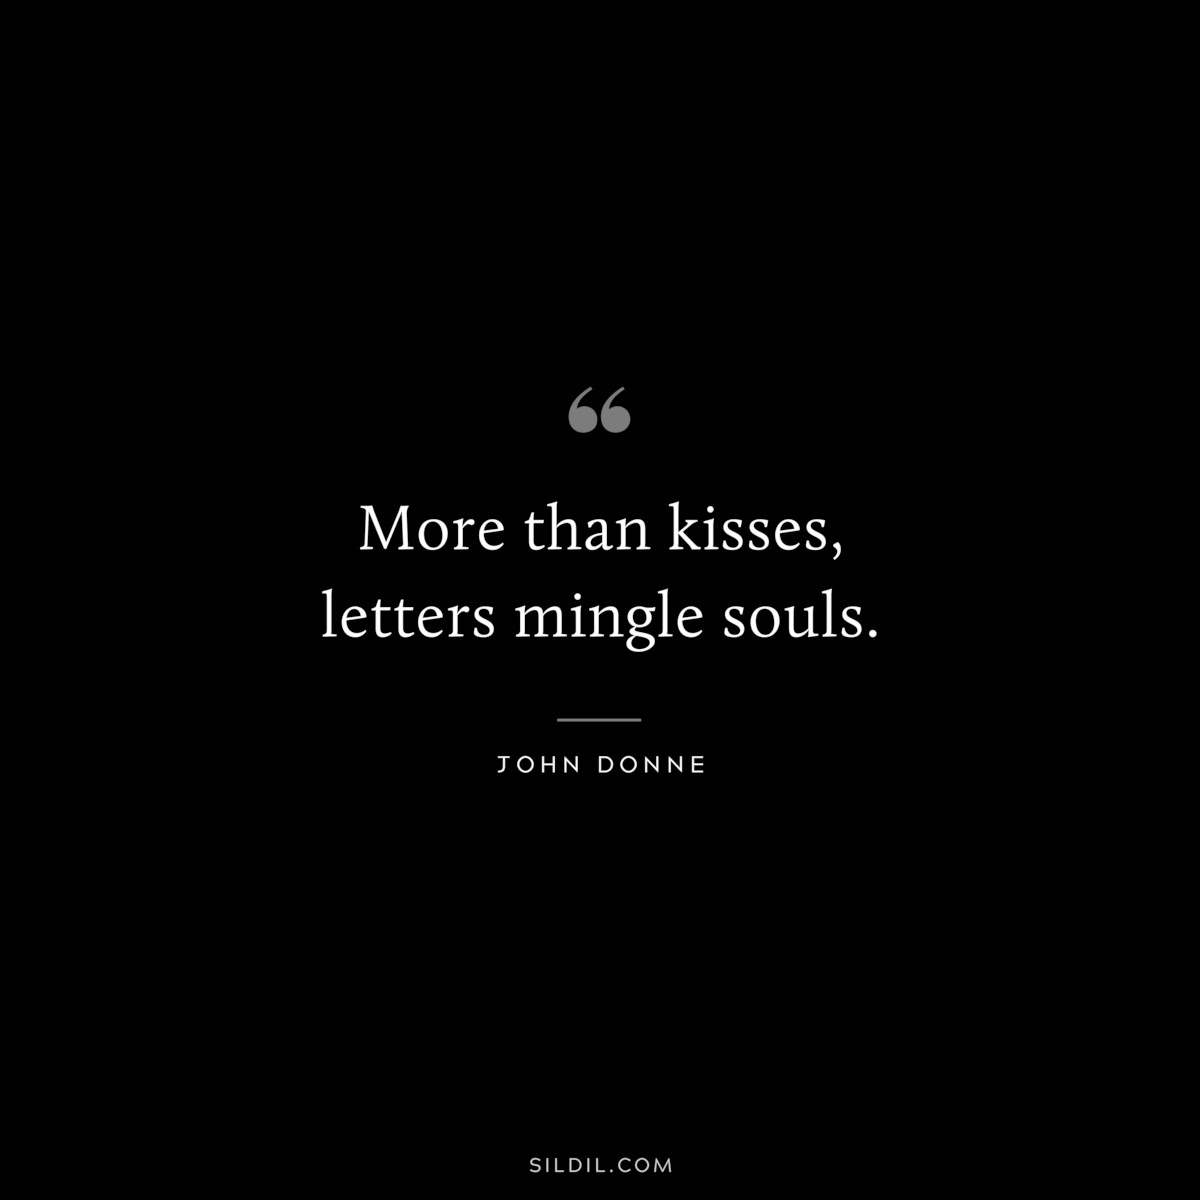 More than kisses, letters mingle souls. ― John Donne